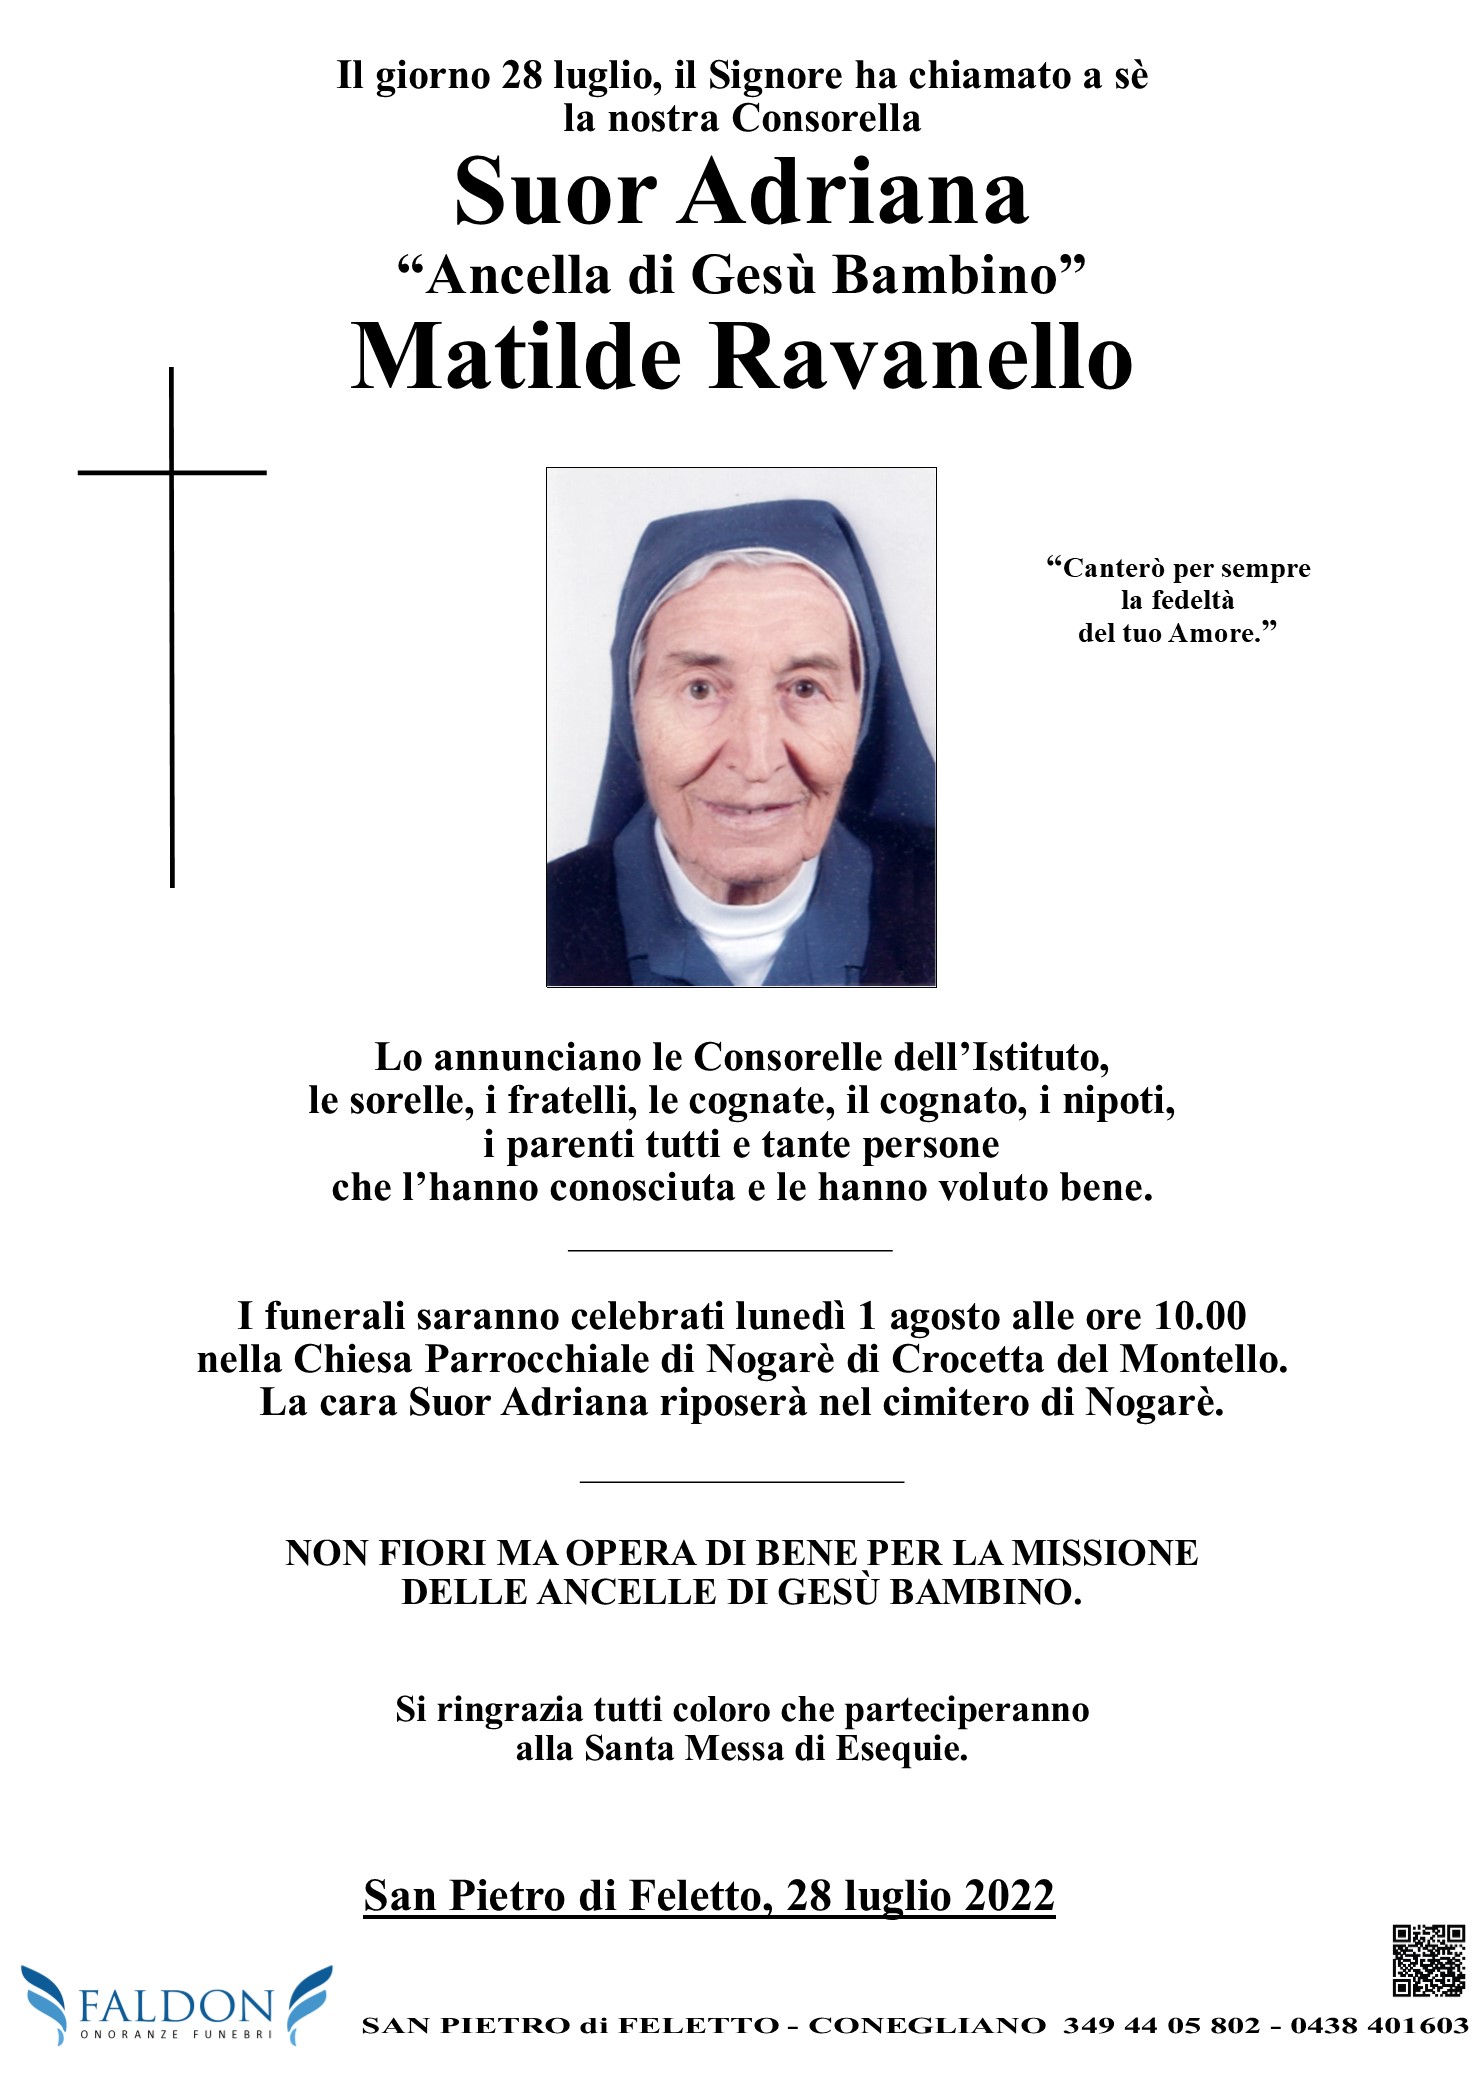 Matilde Ravanello